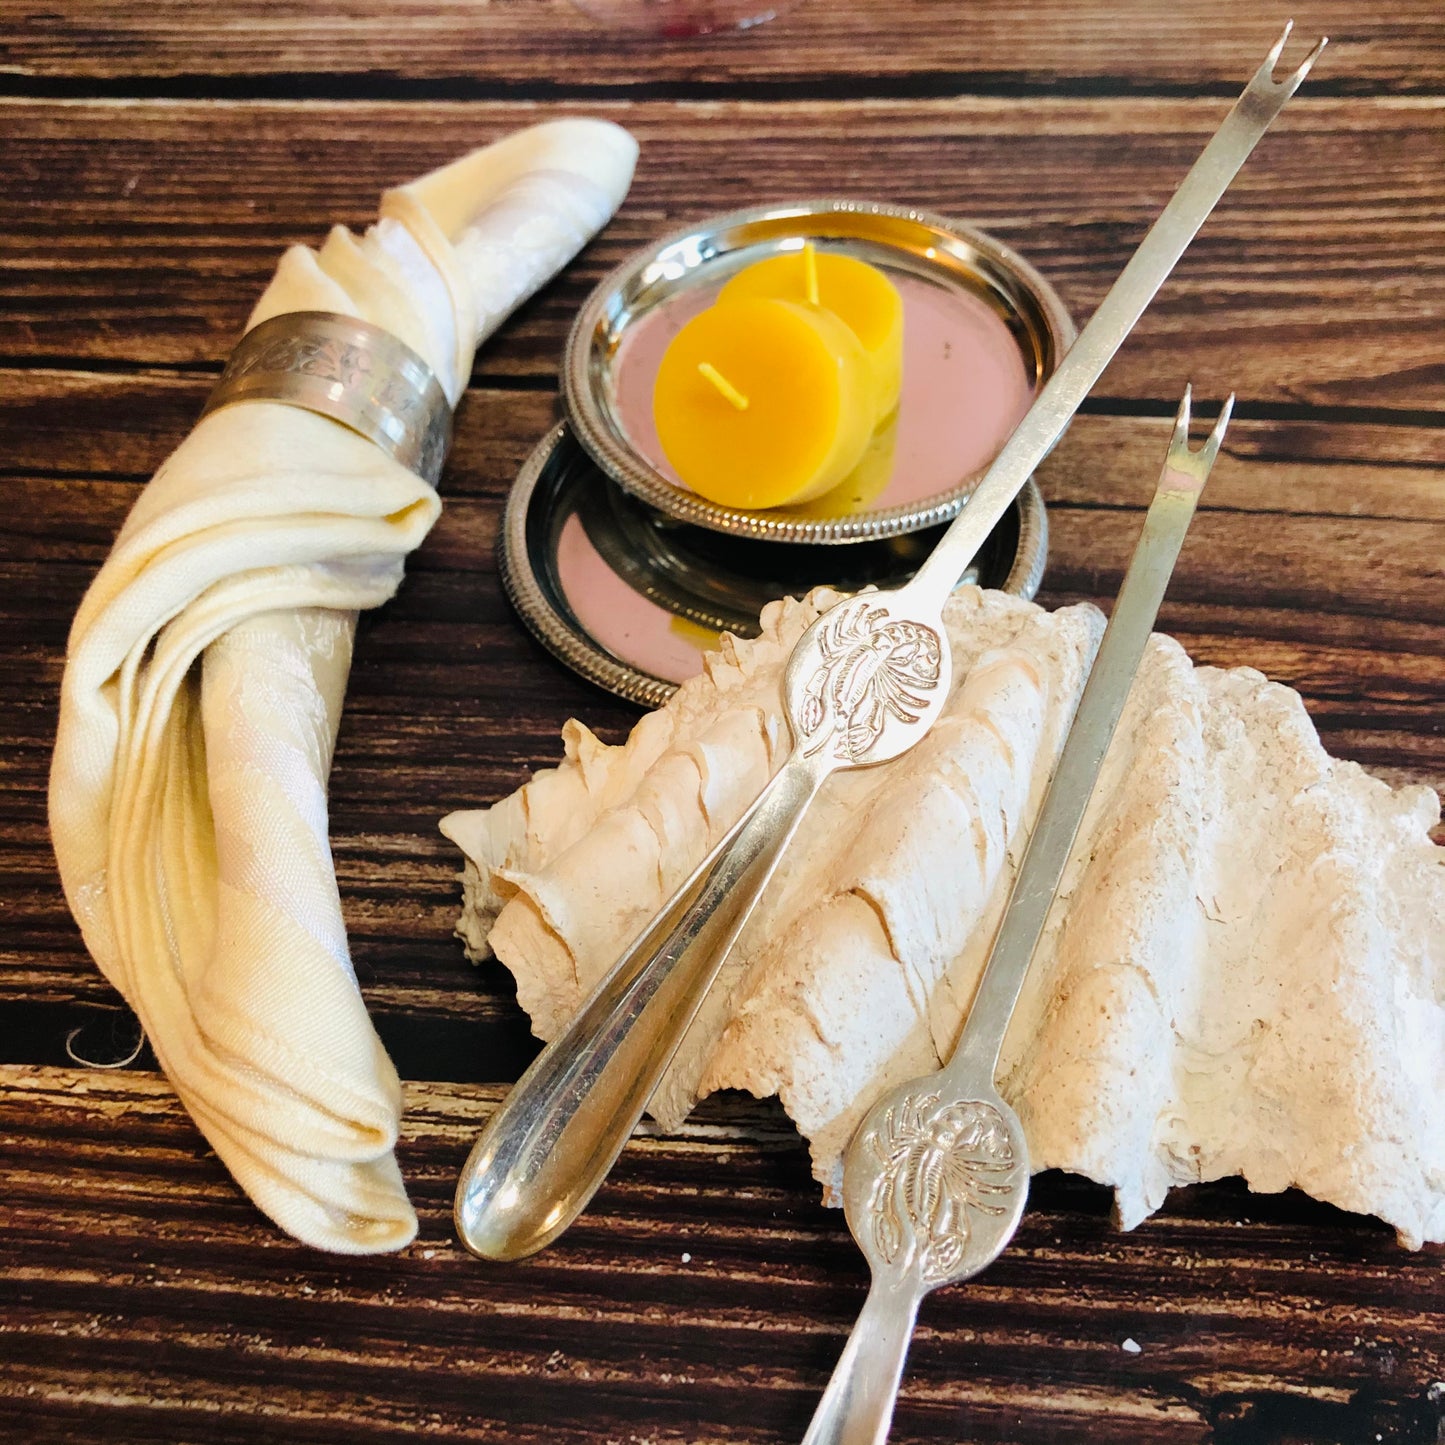 Rare Vintage Lobster Forks Useful Sea Food Utensils